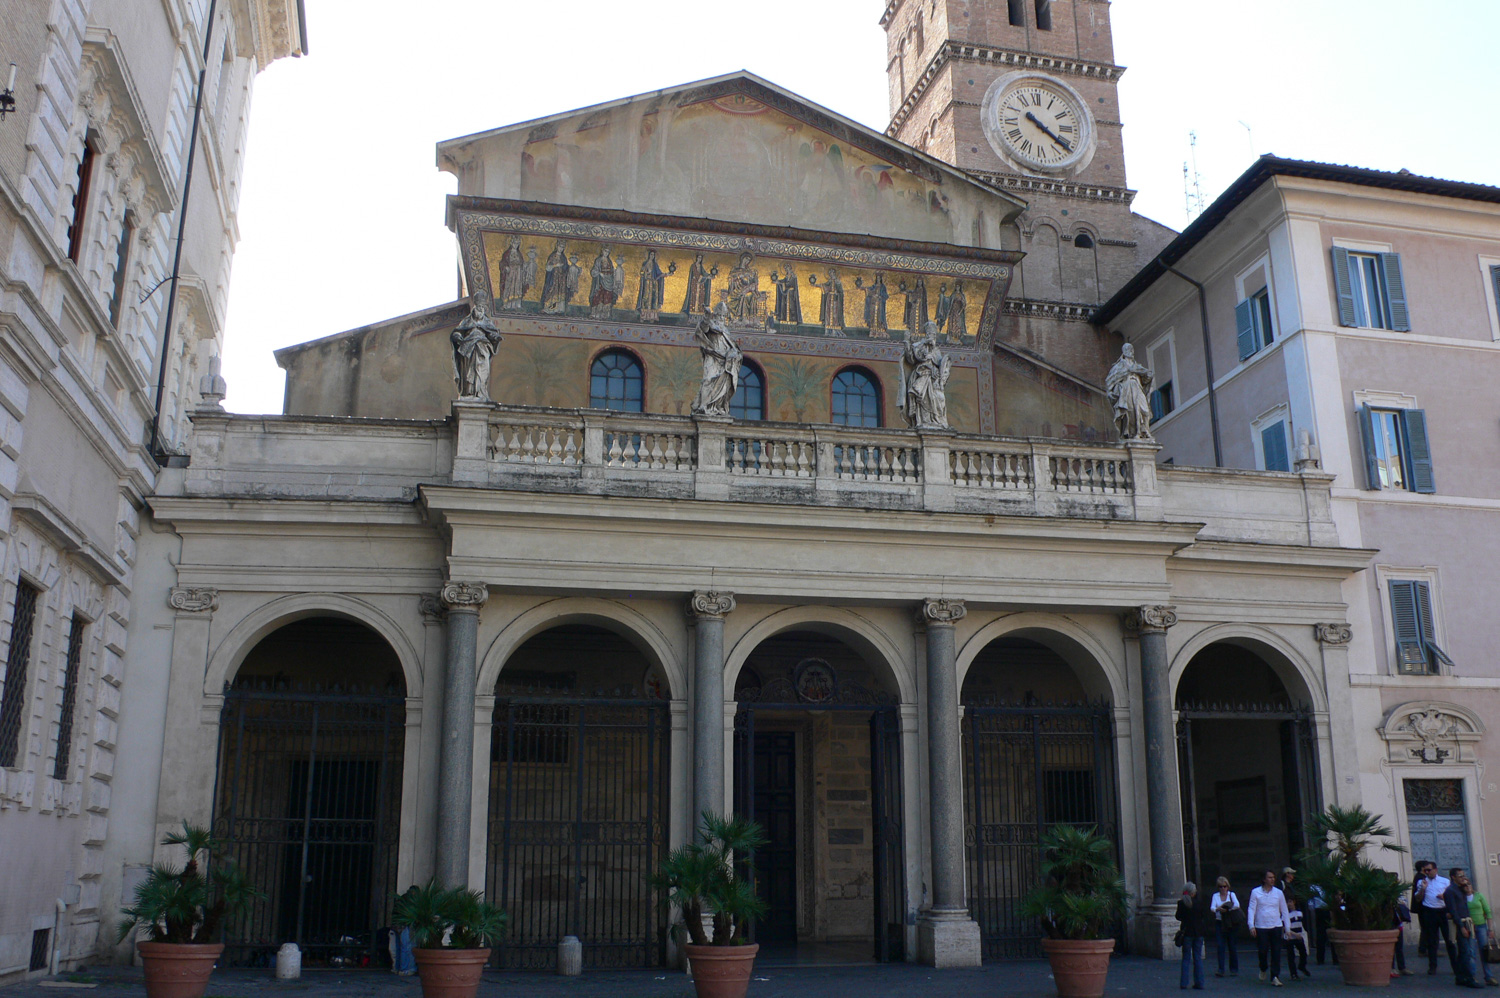 Santa Maria in Trastavere